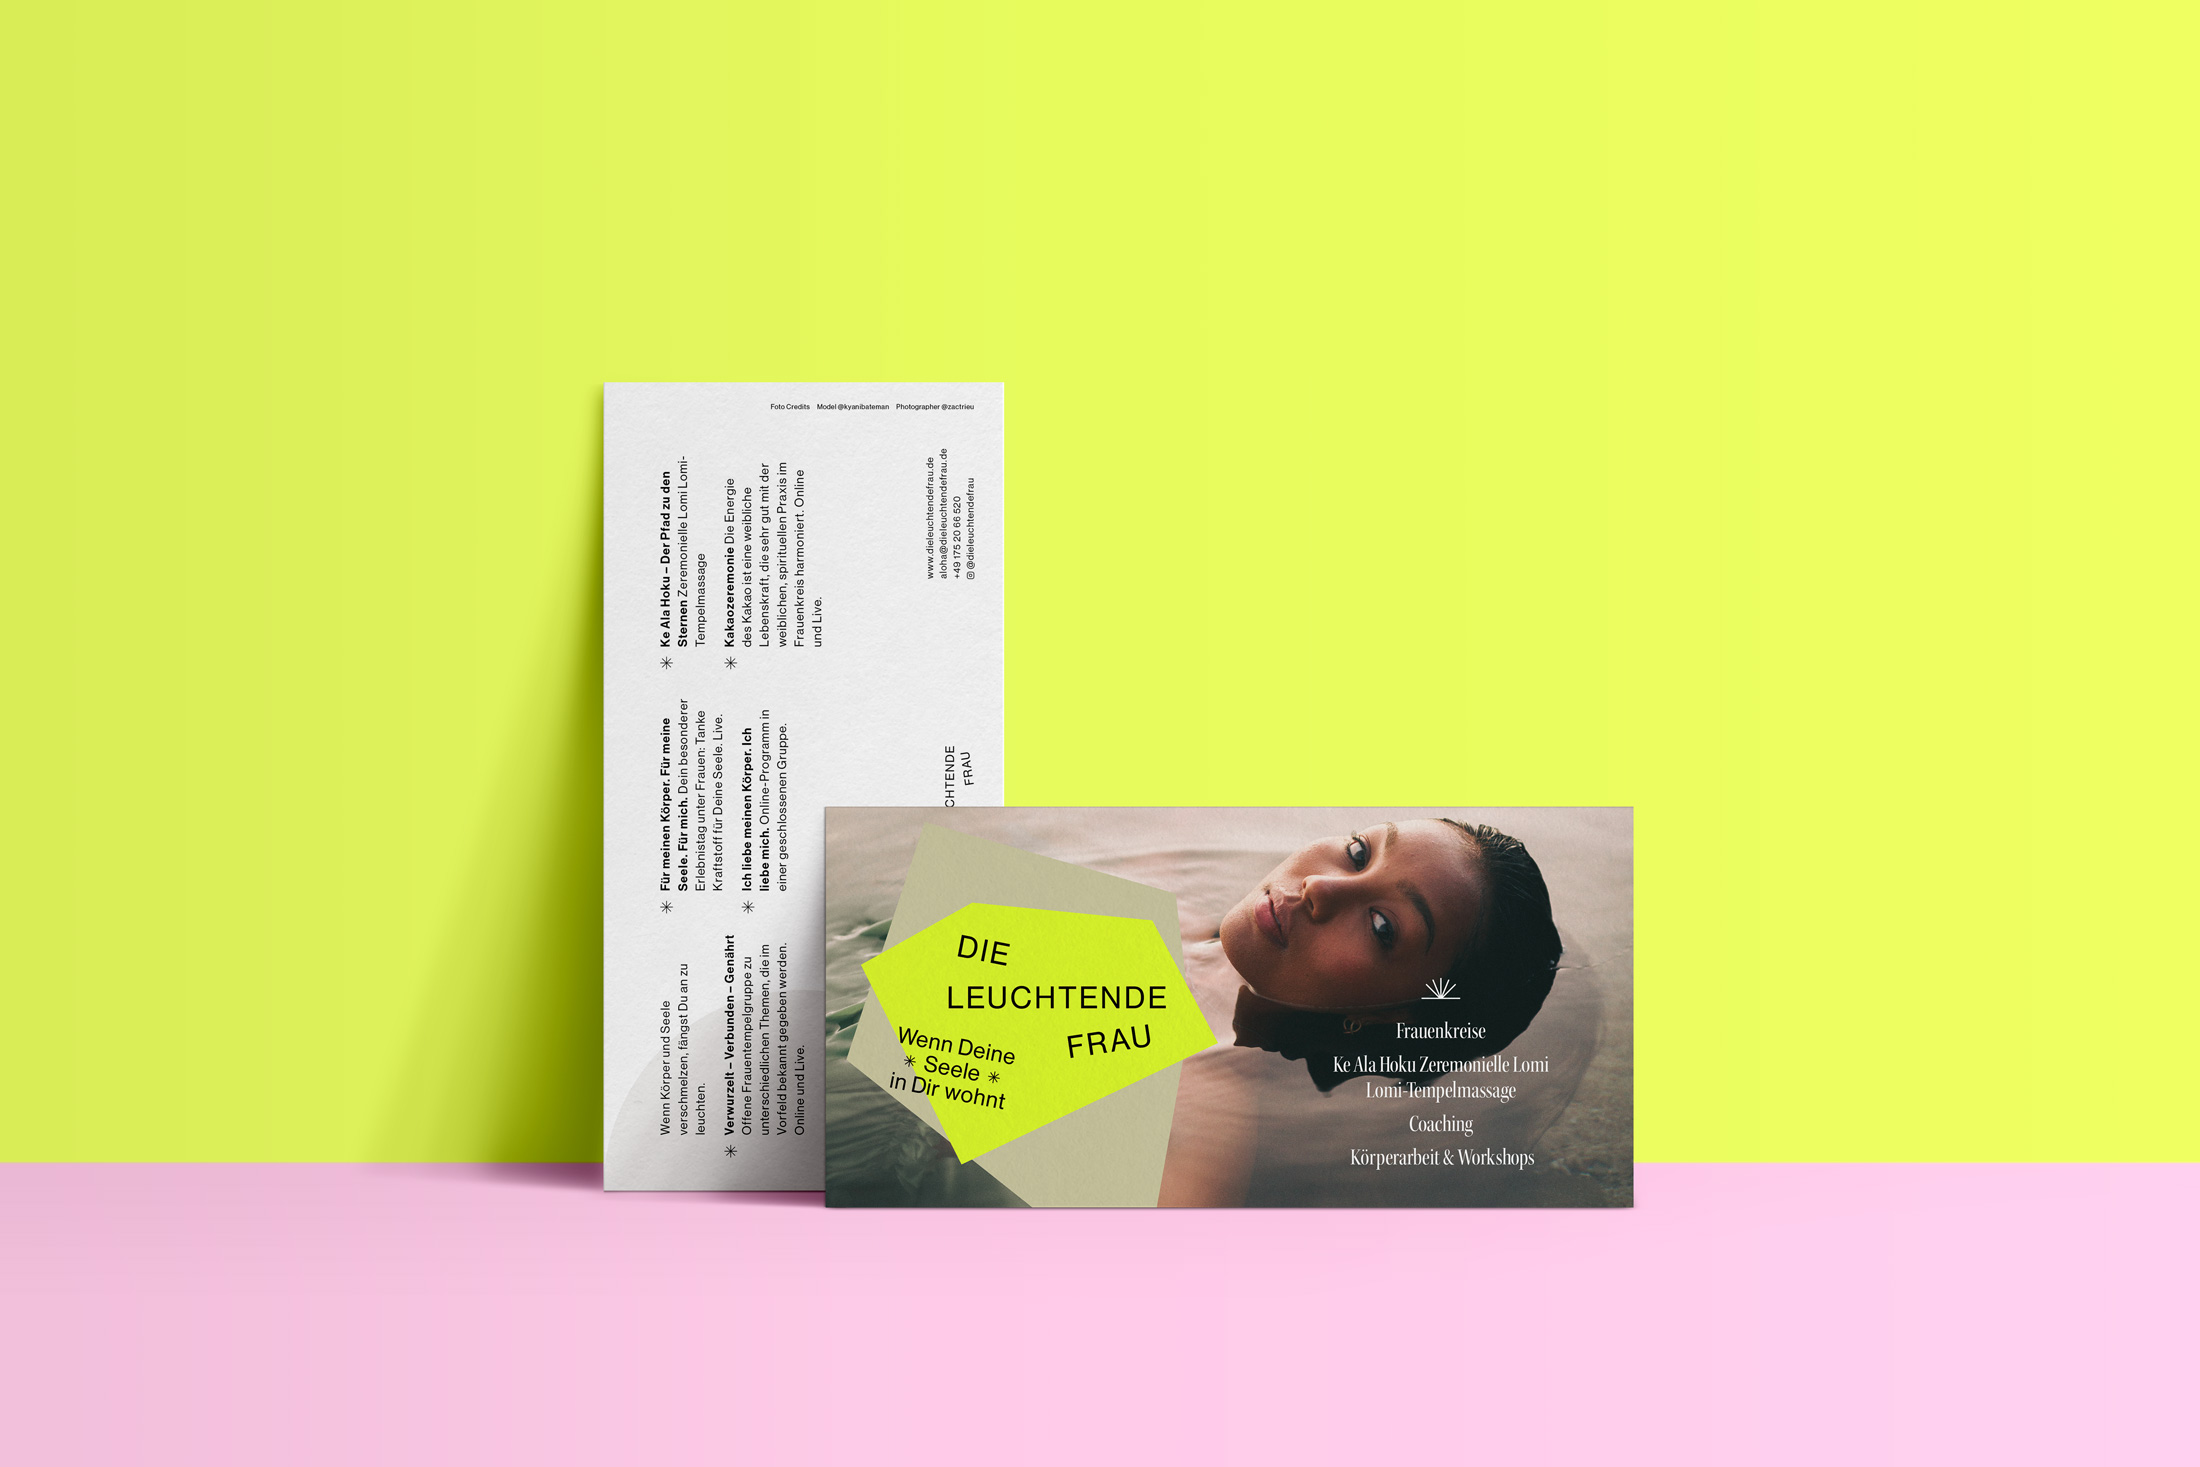 Die Leuchtende Frau – Brand Identity by Mindt Design Studio – Flyer